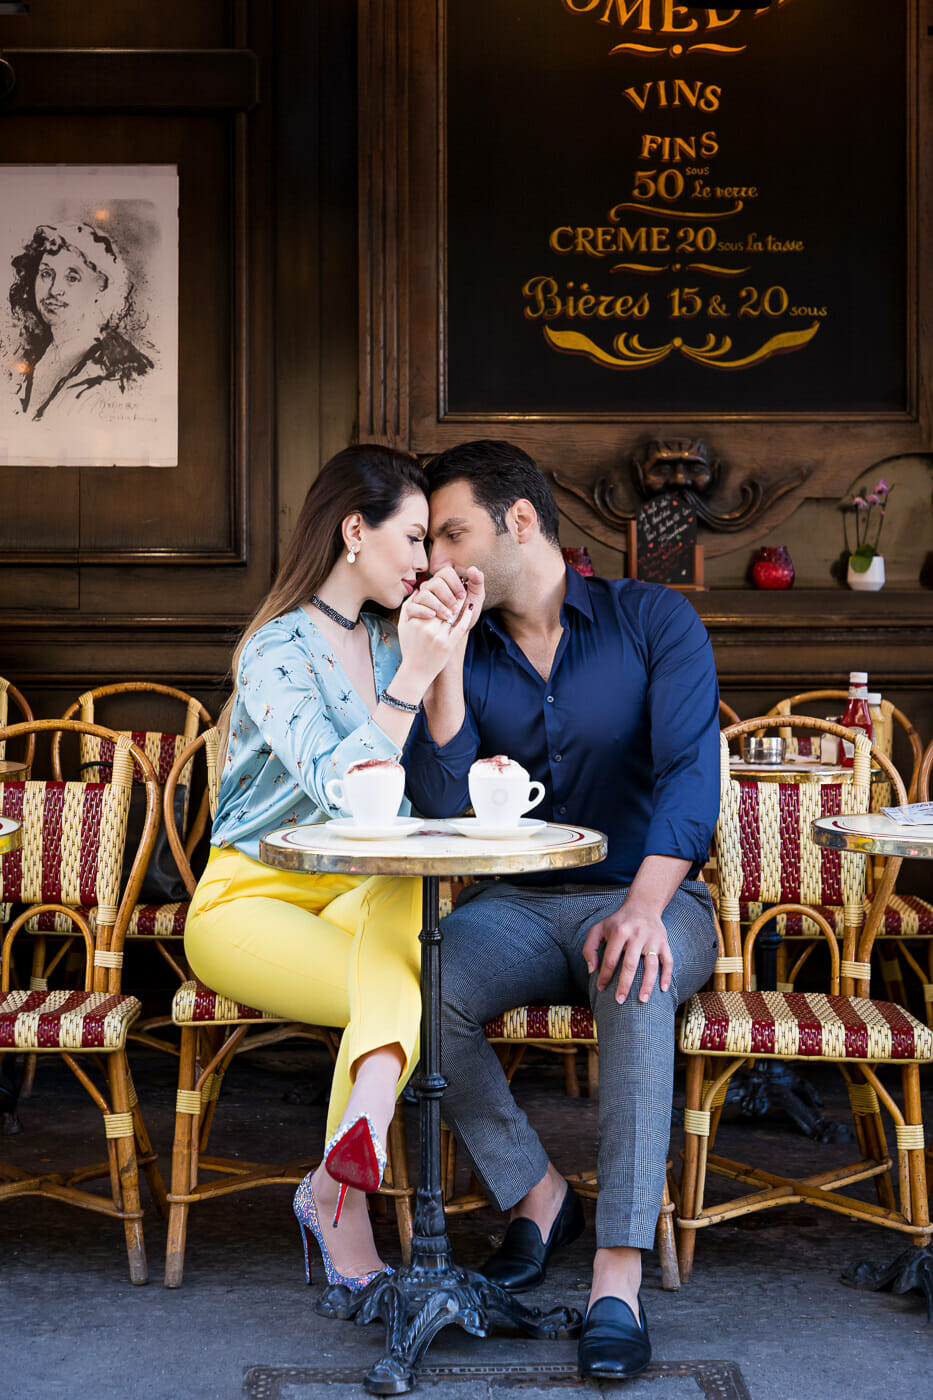 Romantic cafe photo ideas for your Paris engagement photos